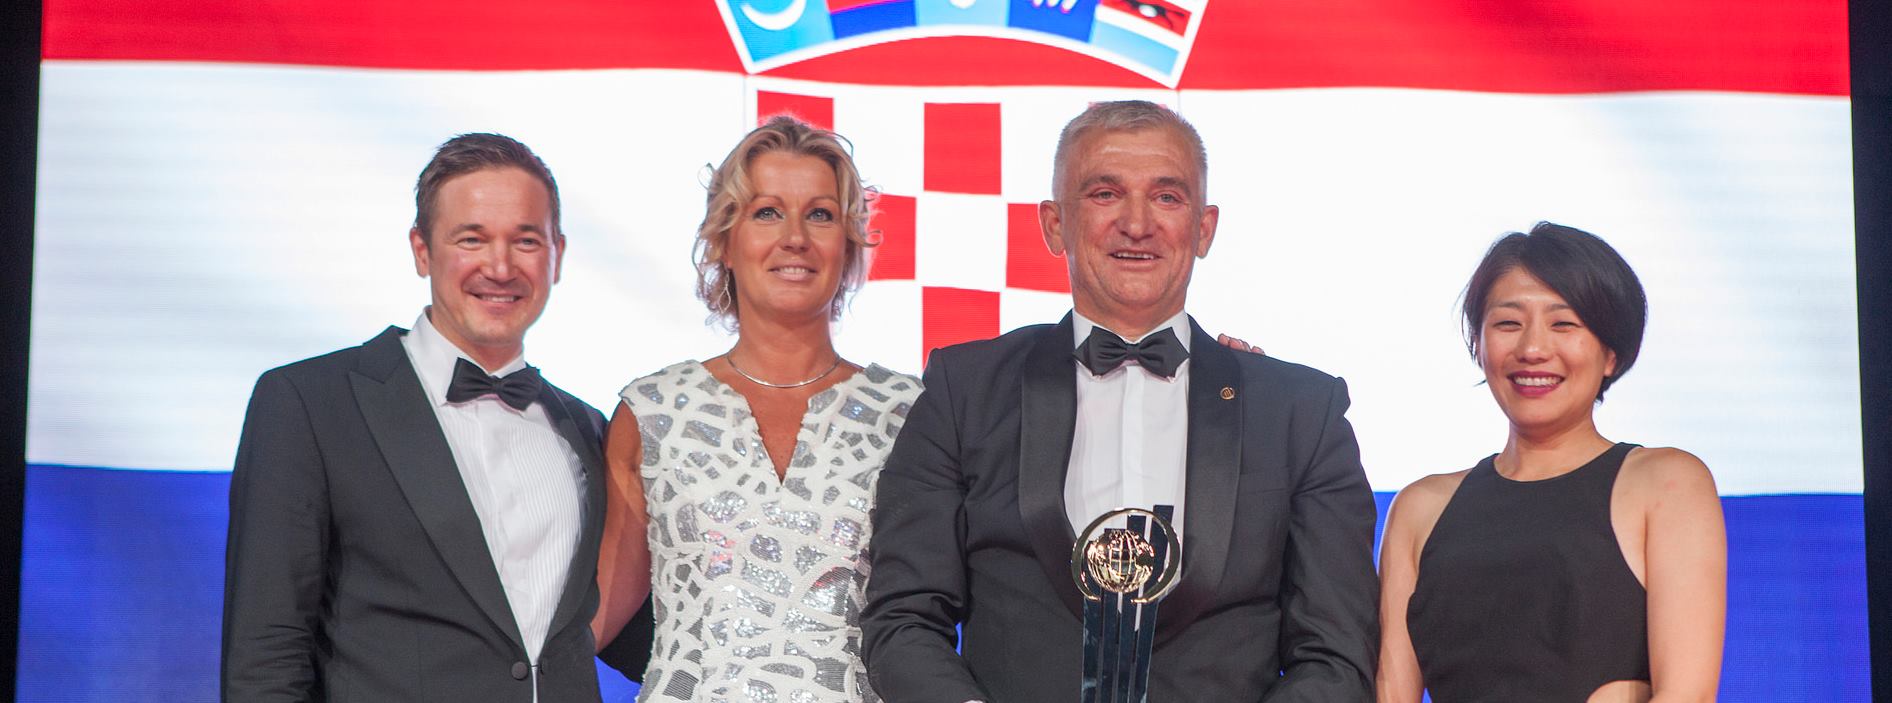 Marko Pipunić predstavljao Republiku Hrvatsku na svjetskoj dodjeli nagrade EY poduzetnik godine